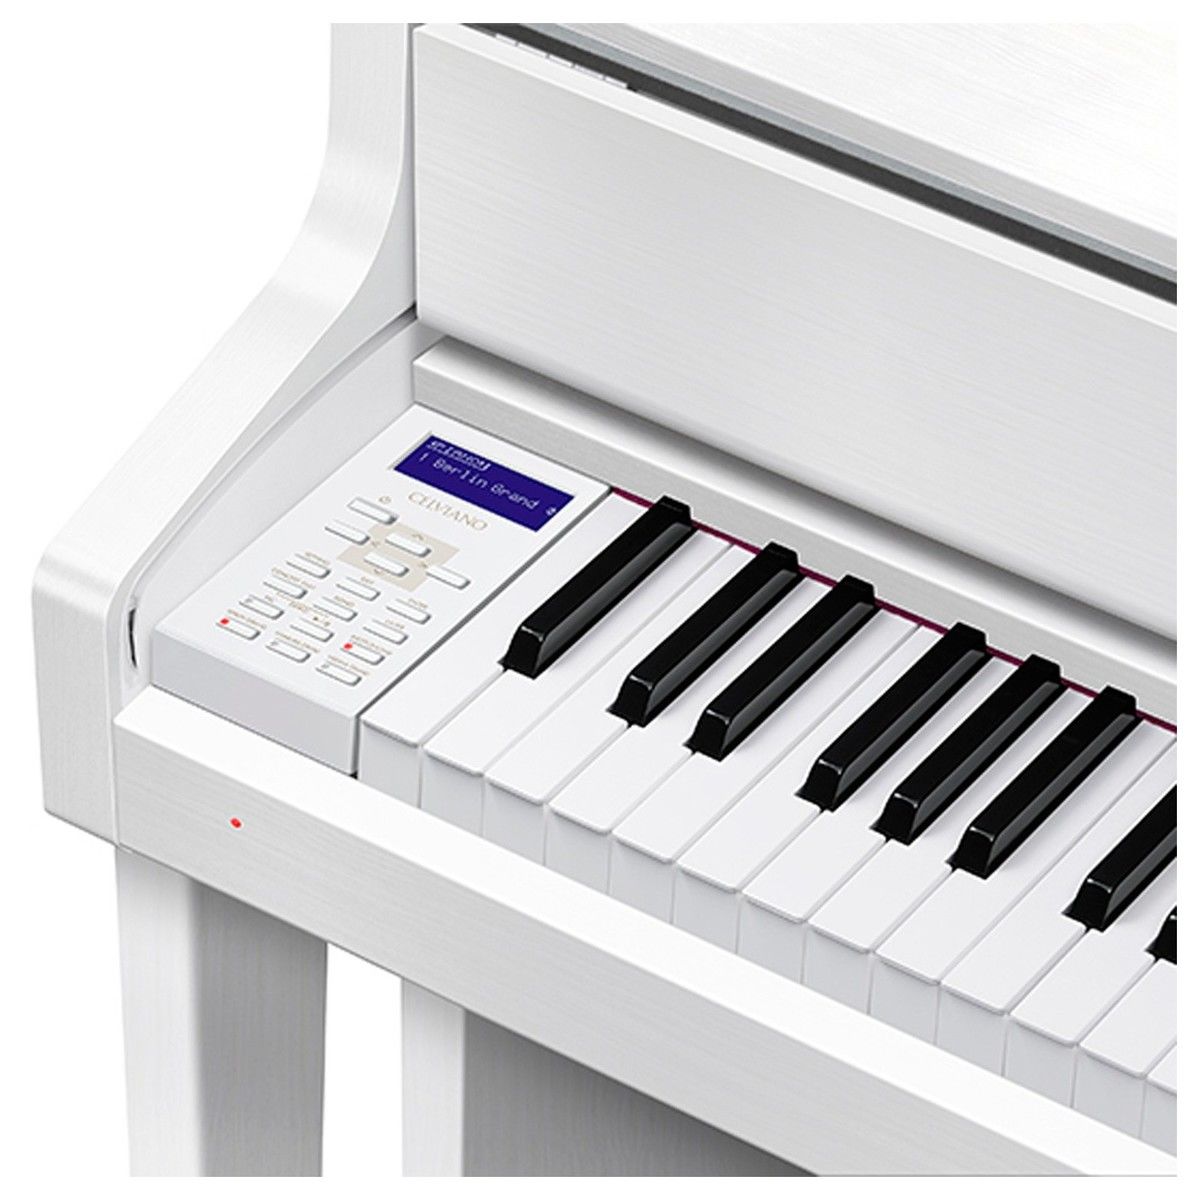 Цифровое пианино Casio Celviano GP-310WE